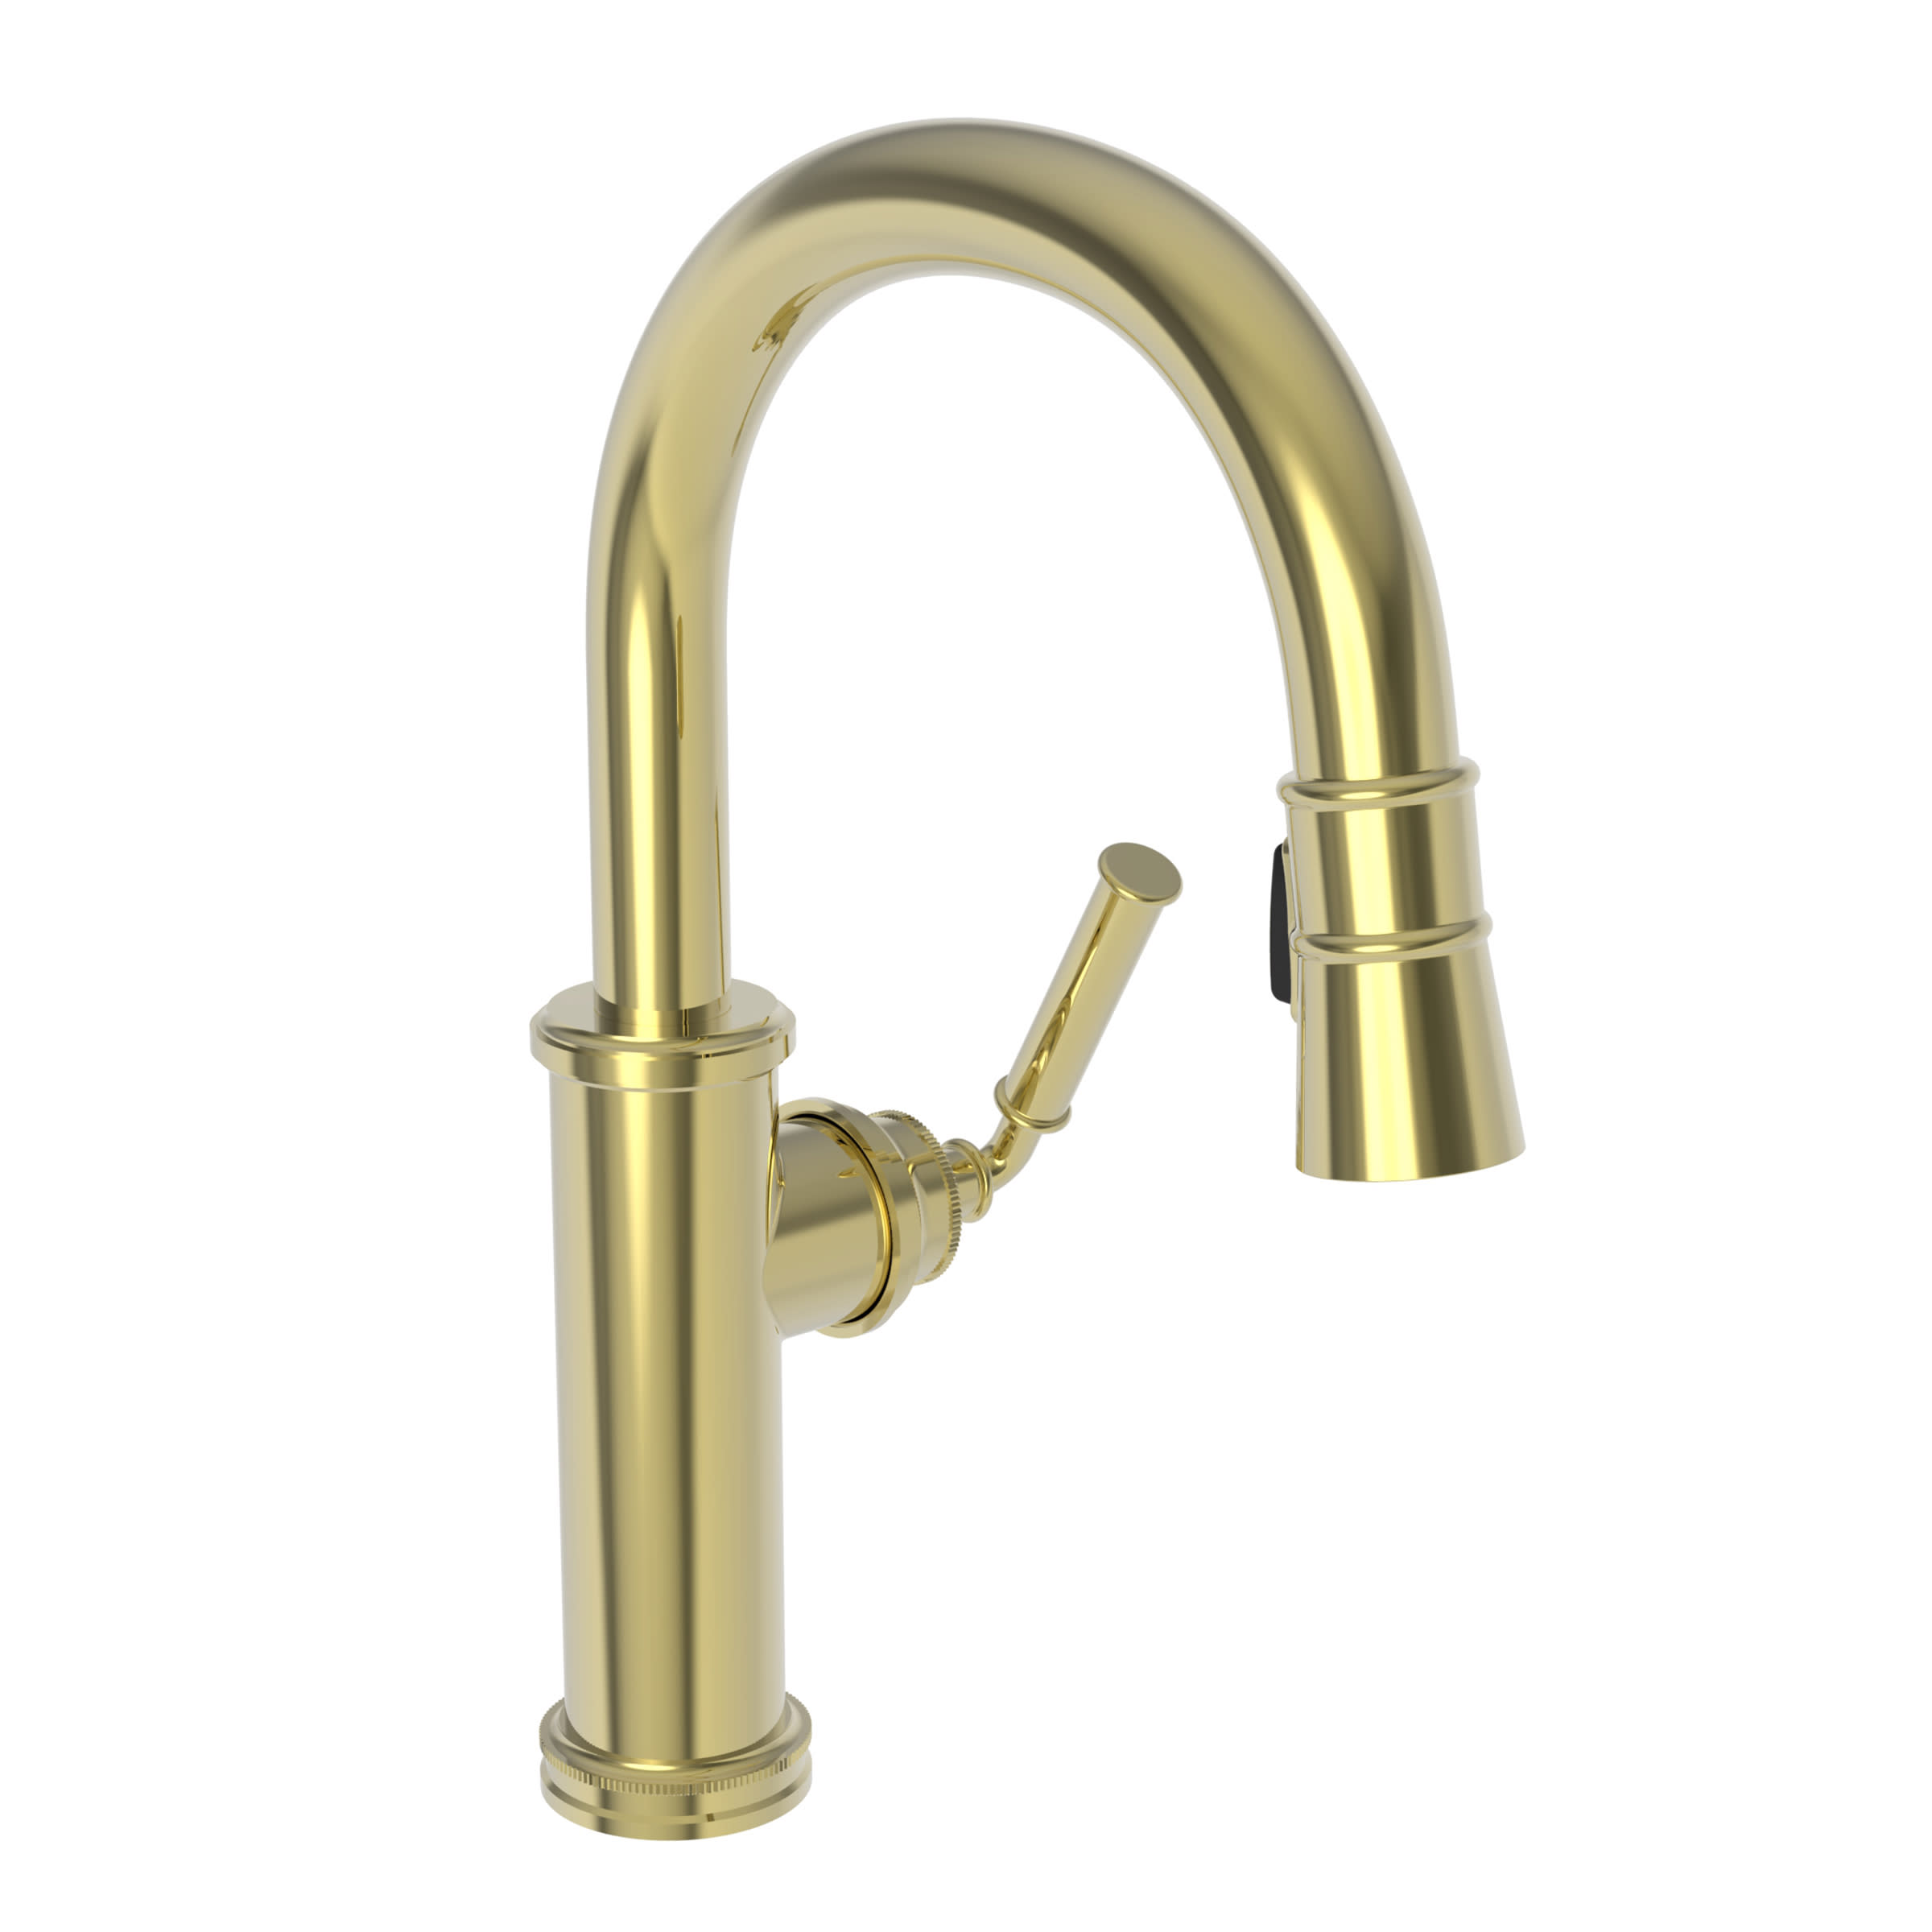 Newport Brass 1200-5223/04 Metropole Prep/Bar Pull Down Faucet Satin Brass